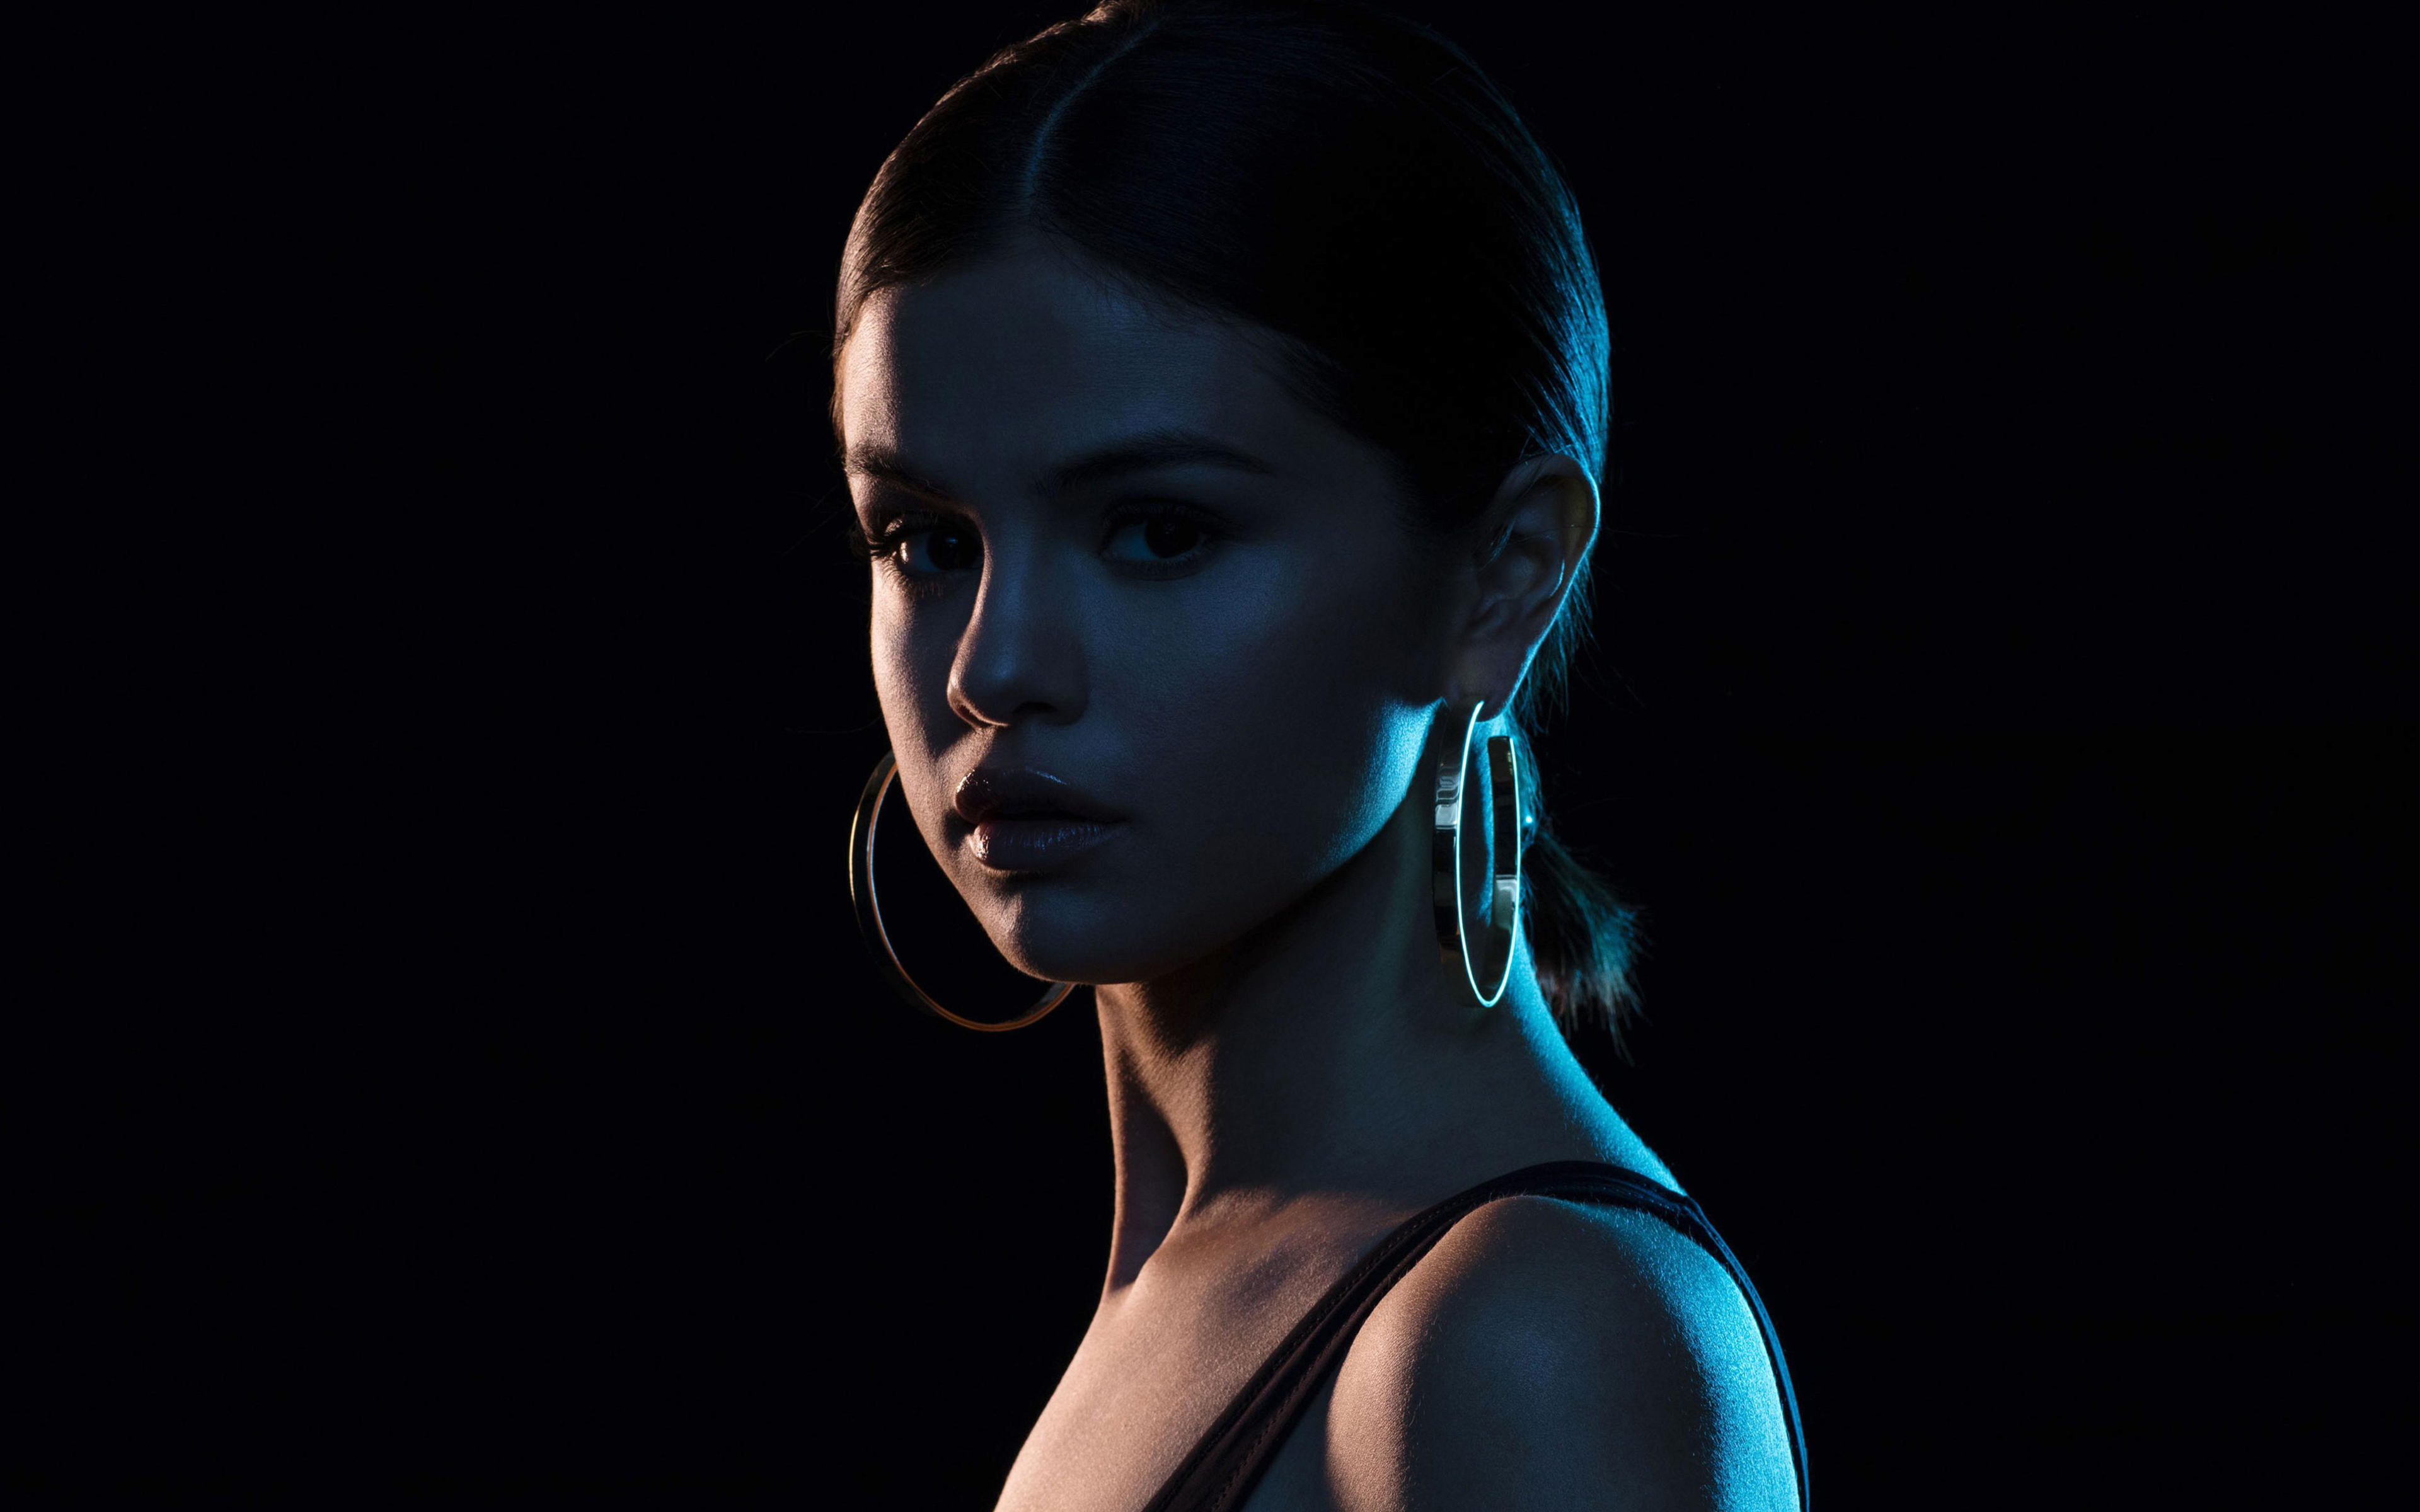 2017 Selena Gomez 4k, HD Celebrities, 4k Wallpapers ...